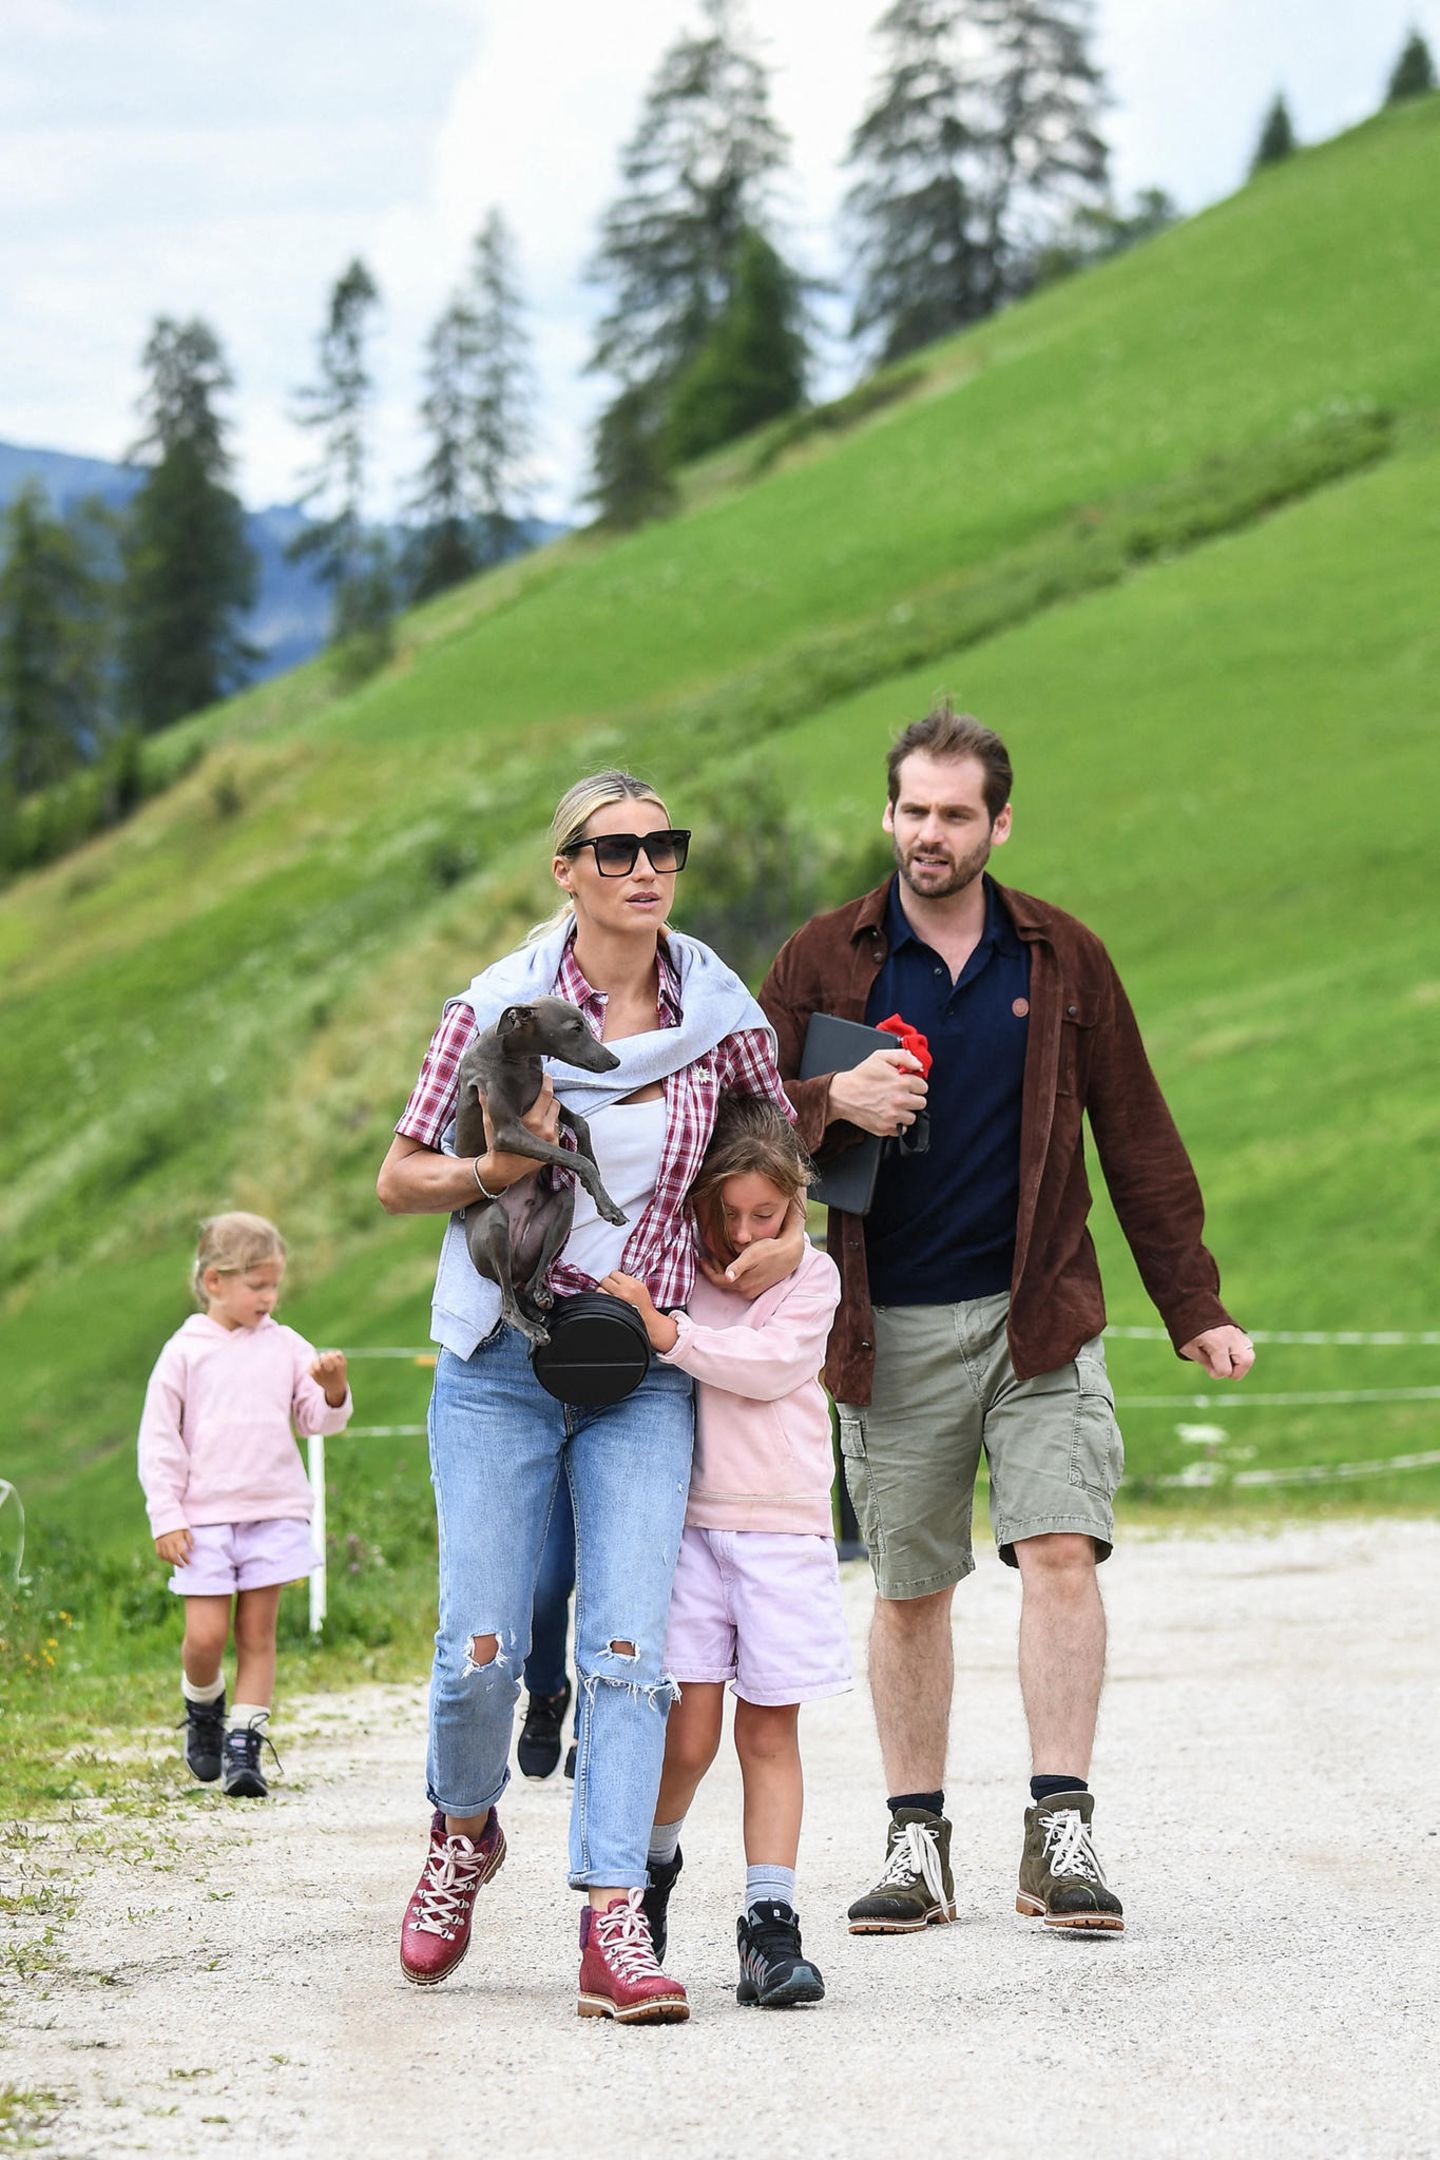 25. Juli 2020  Das schöne Wochenende nutzen Michelle Hunziker und Tomaso Trussardi für einen Familienausflug in die Südtiroler Berge. Auch ihre beiden Töchter haben die Wanderschuhe geschnürt, allerdings scheint sich die Begeisterung zu Beginn noch in Grenzen zu halten. Sole möchte es jedenfalls gemütlich angehen und lieber mit ihrer Mutter kuscheln.